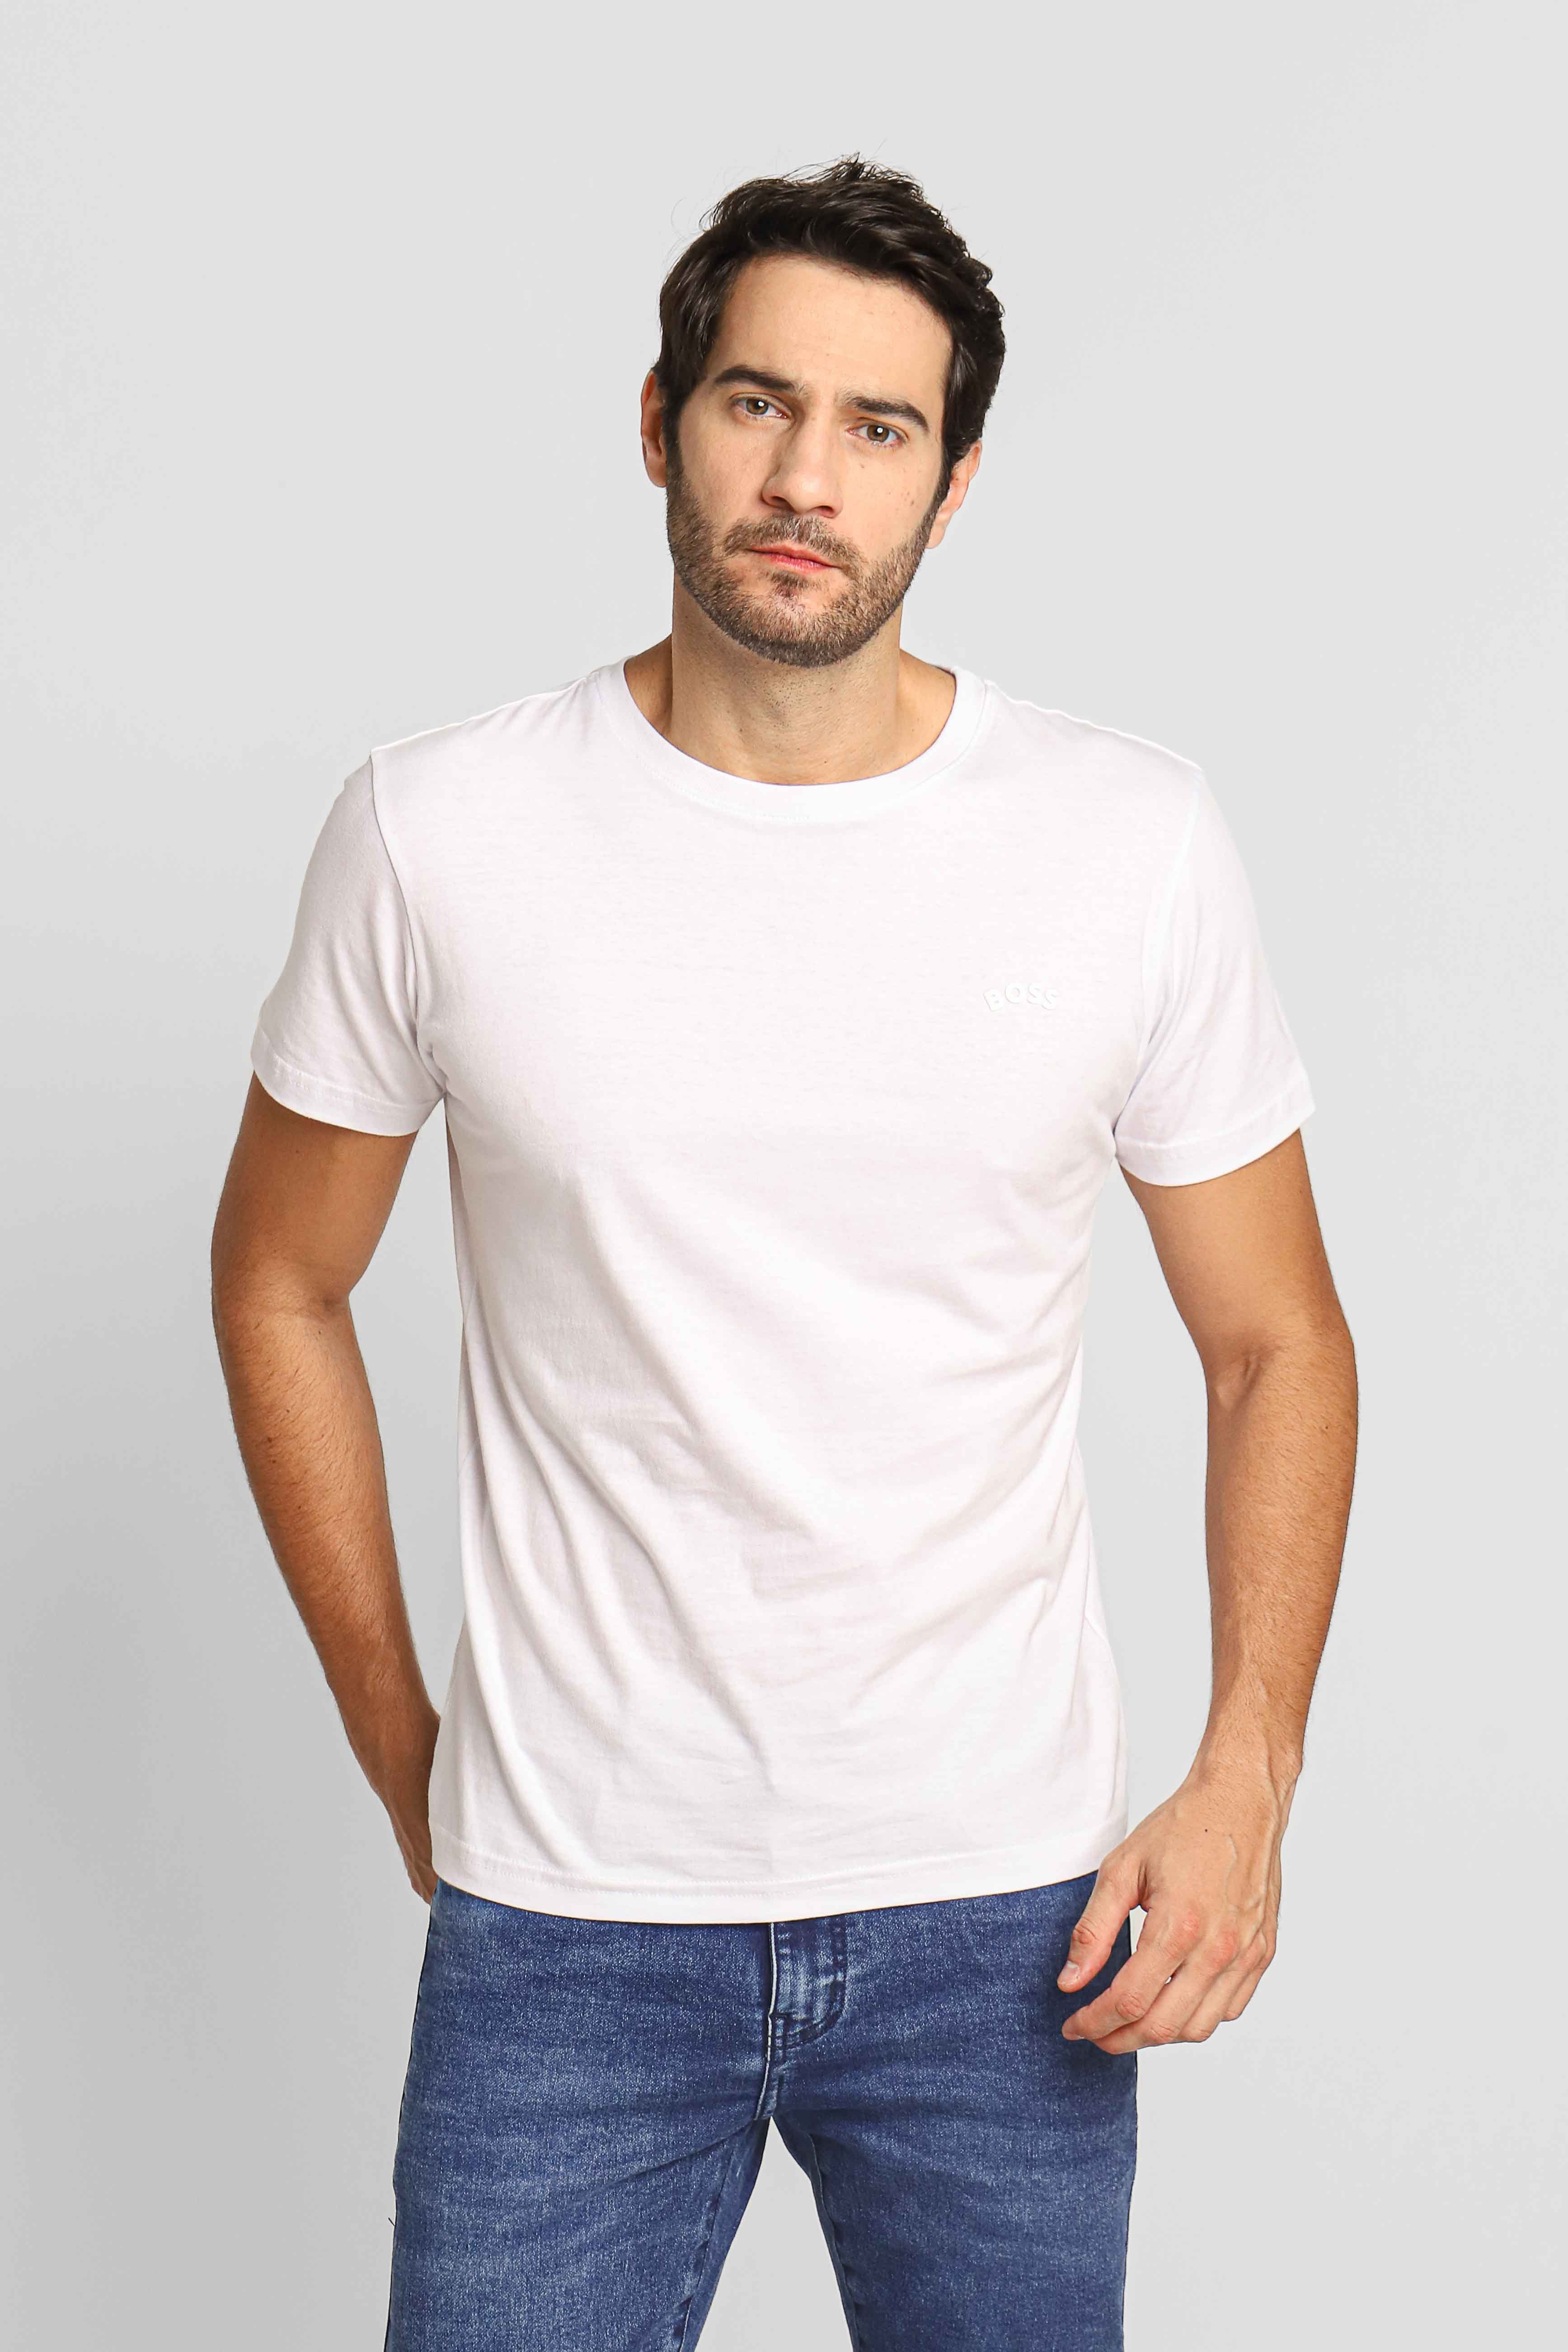 Camiseta Tommy Hilfiger Masculina Regular Fit Em Algodão Egípcio New York  City Branca